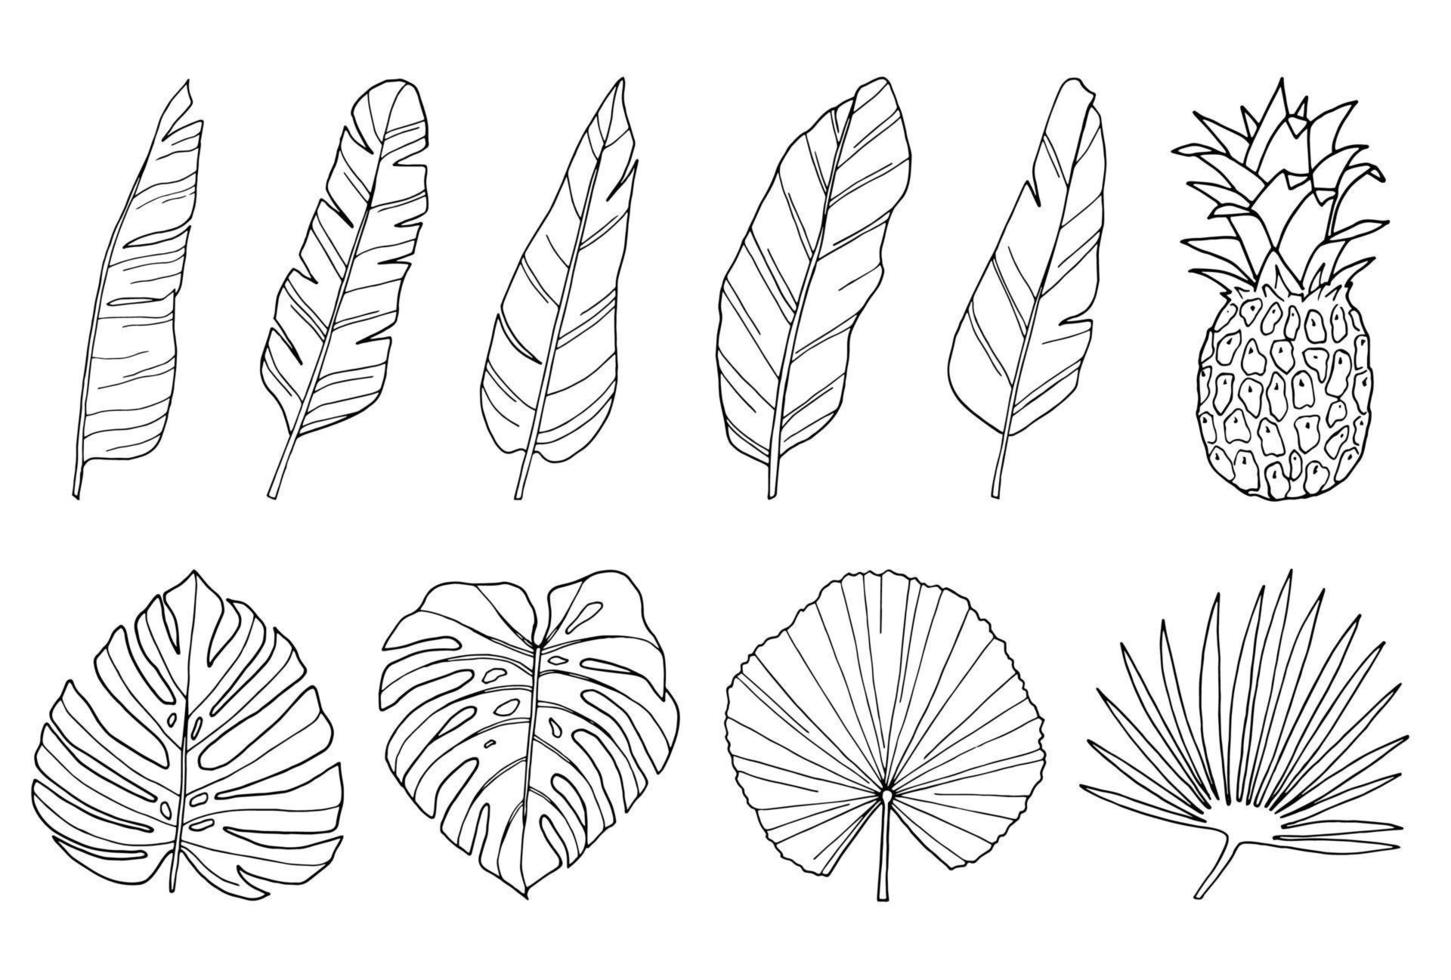 illustrazioni disegnate a mano in foglia di palma insieme di foglie esotiche tropicali nere di linea arte isolate su bianco vettore